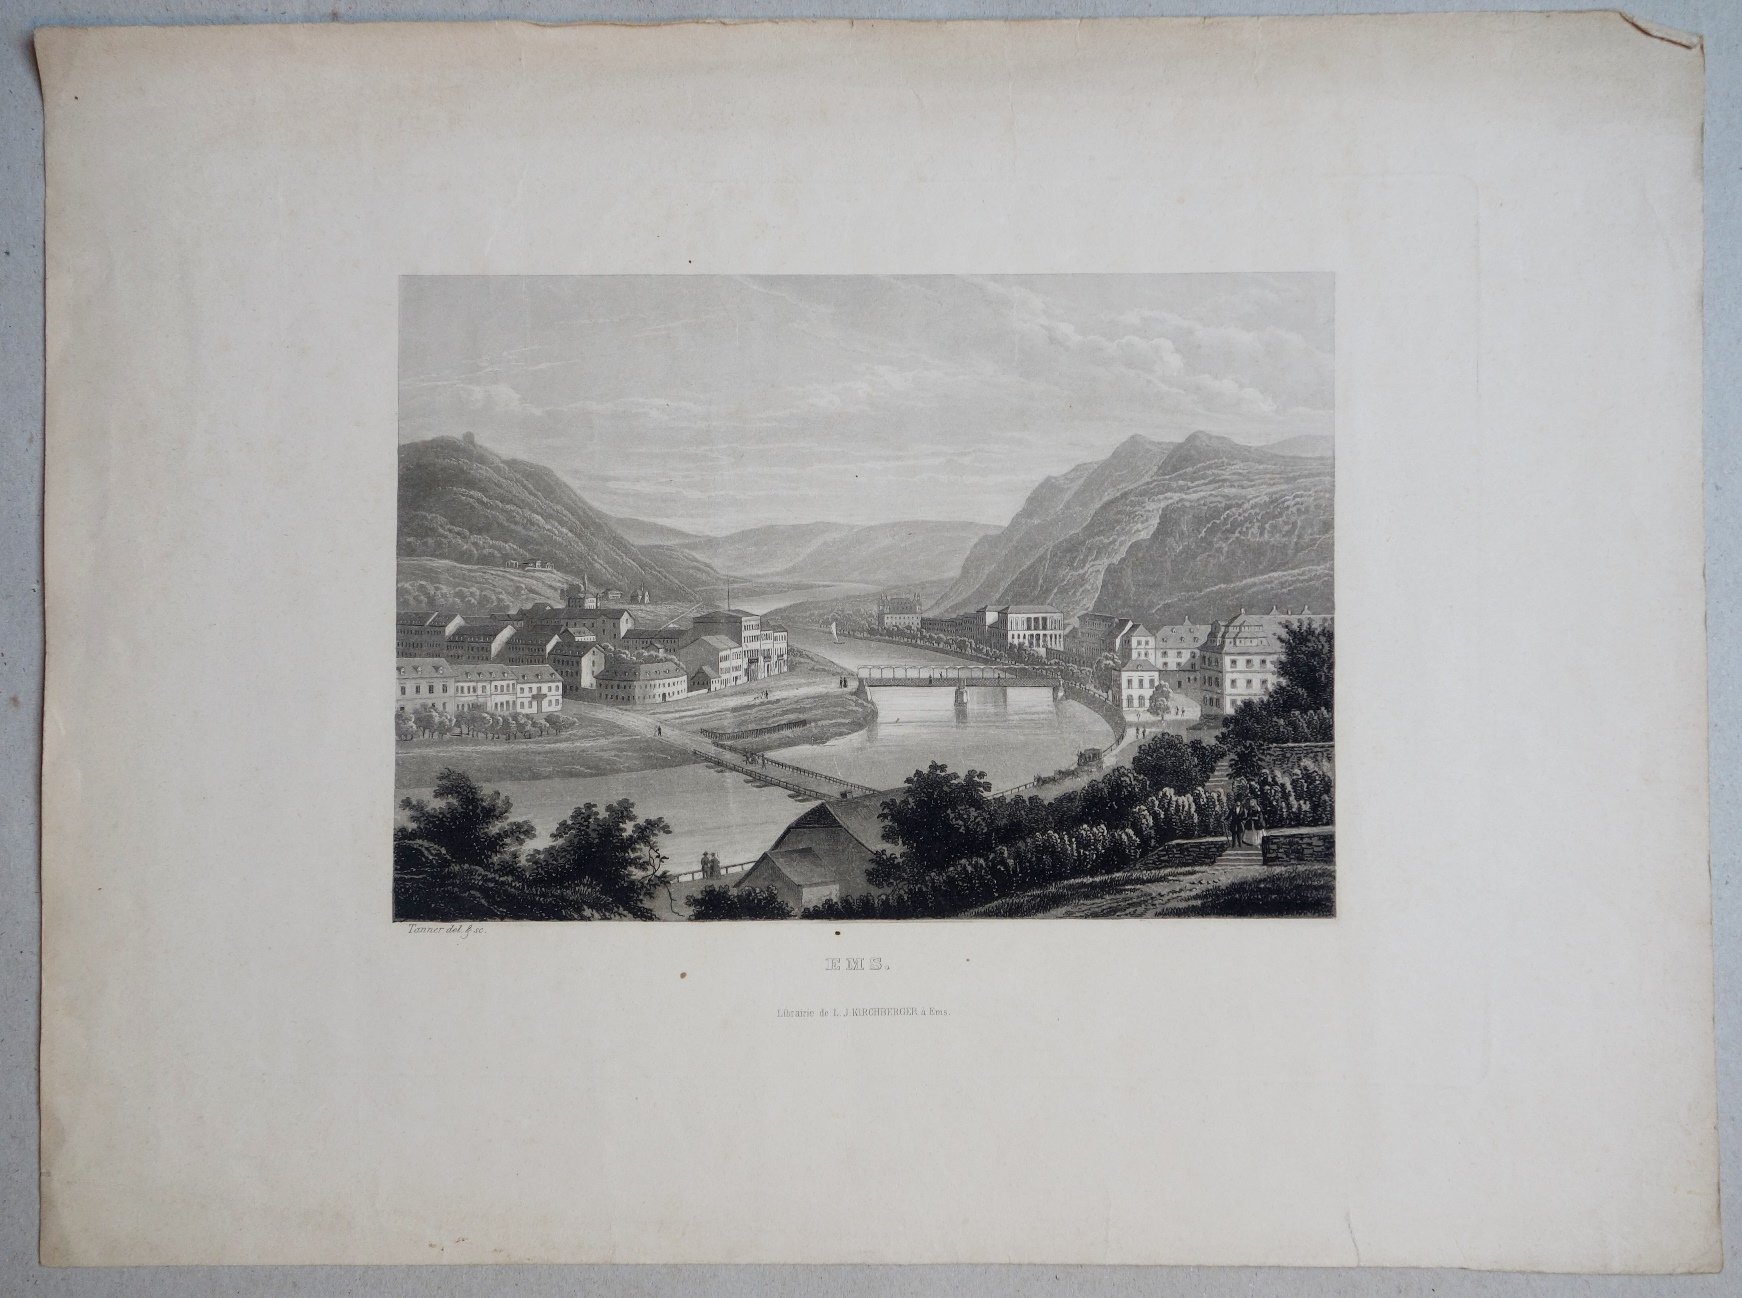 Bad Ems: Gesamtansicht der Stadt, um 1847 (Schloß Wernigerode GmbH RR-F)